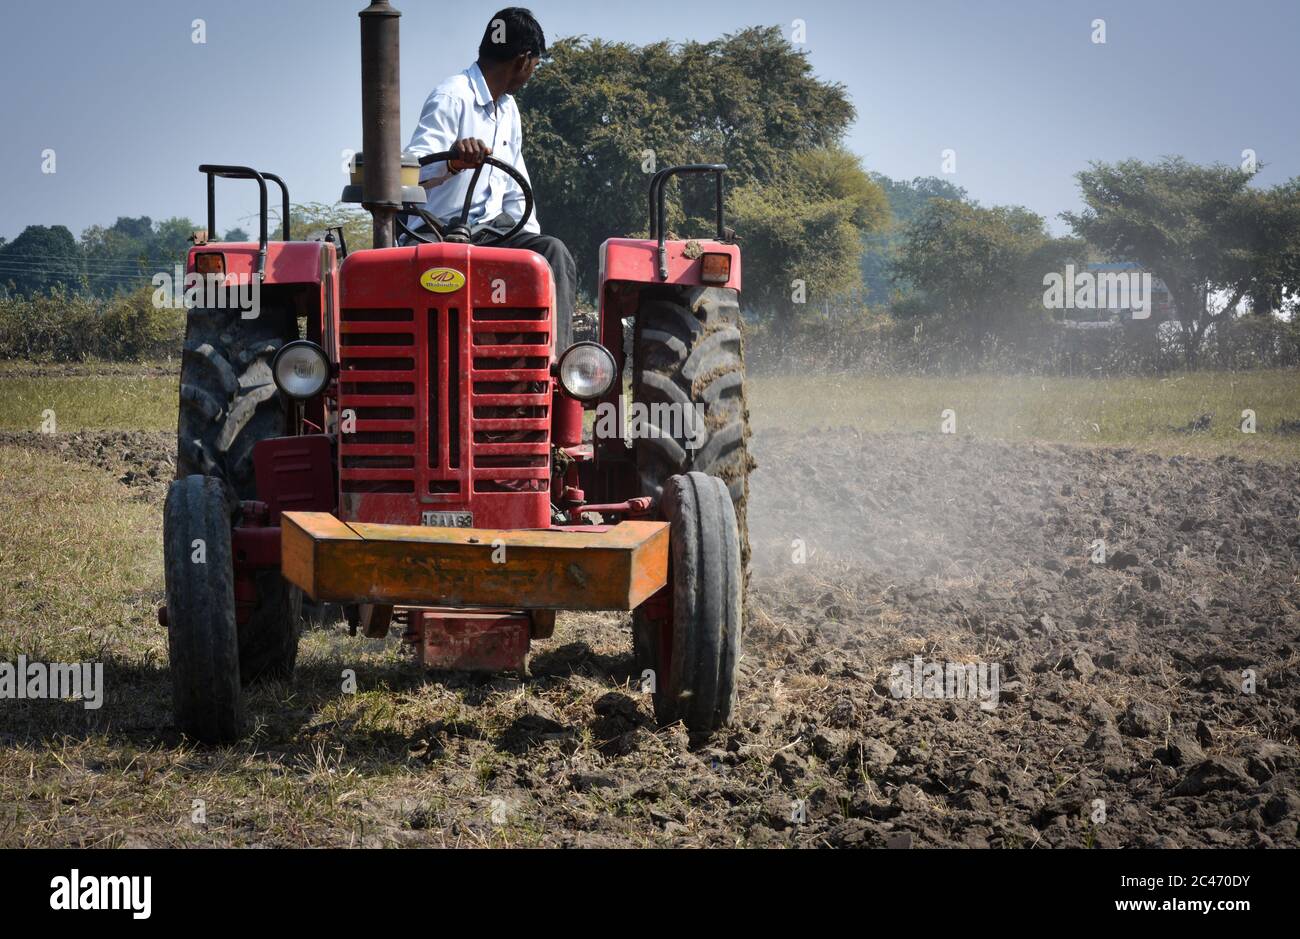 TIKAMGARH, MADHYA PRADESH, INDE - 10 NOVEMBRE 2019 : agriculteur indien avec tracteur préparant des terres pour semis avec herse. Banque D'Images